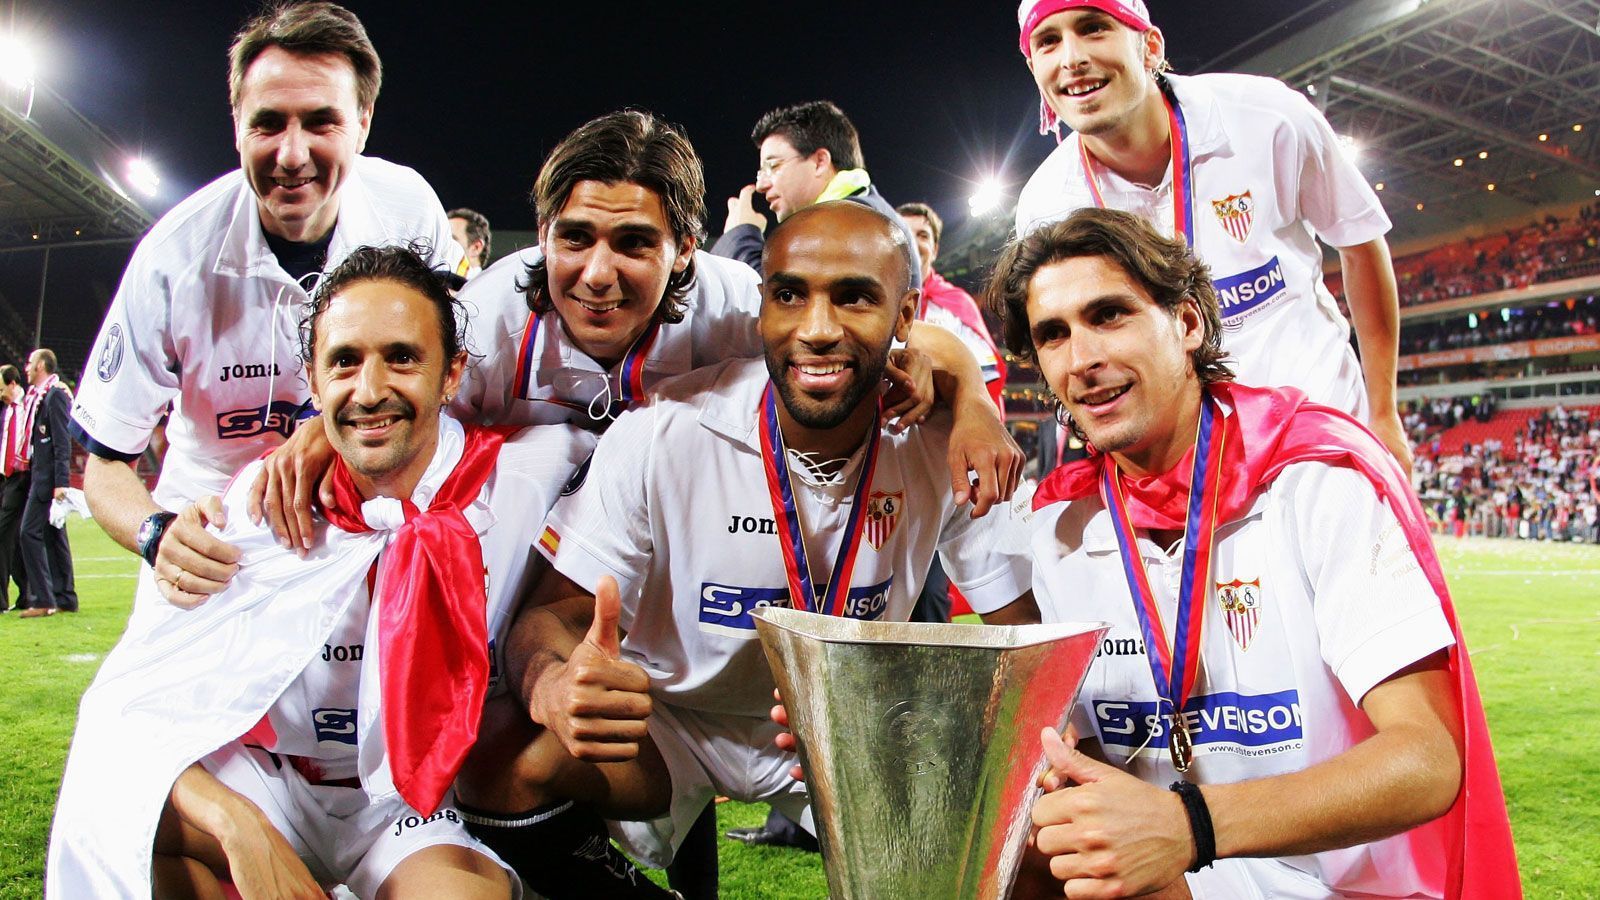 
                <strong>Sieg im UEFA-Cup 2005/06</strong><br>
                Den Anfang im Sextet macht der Erfolg im UEFA-Cup 2005/06: Die Andalusier schlagen den FC Middlesborough in Eindhoven mit 4:0 und gewinnen damit ihren ersten europäischen Titel.
              